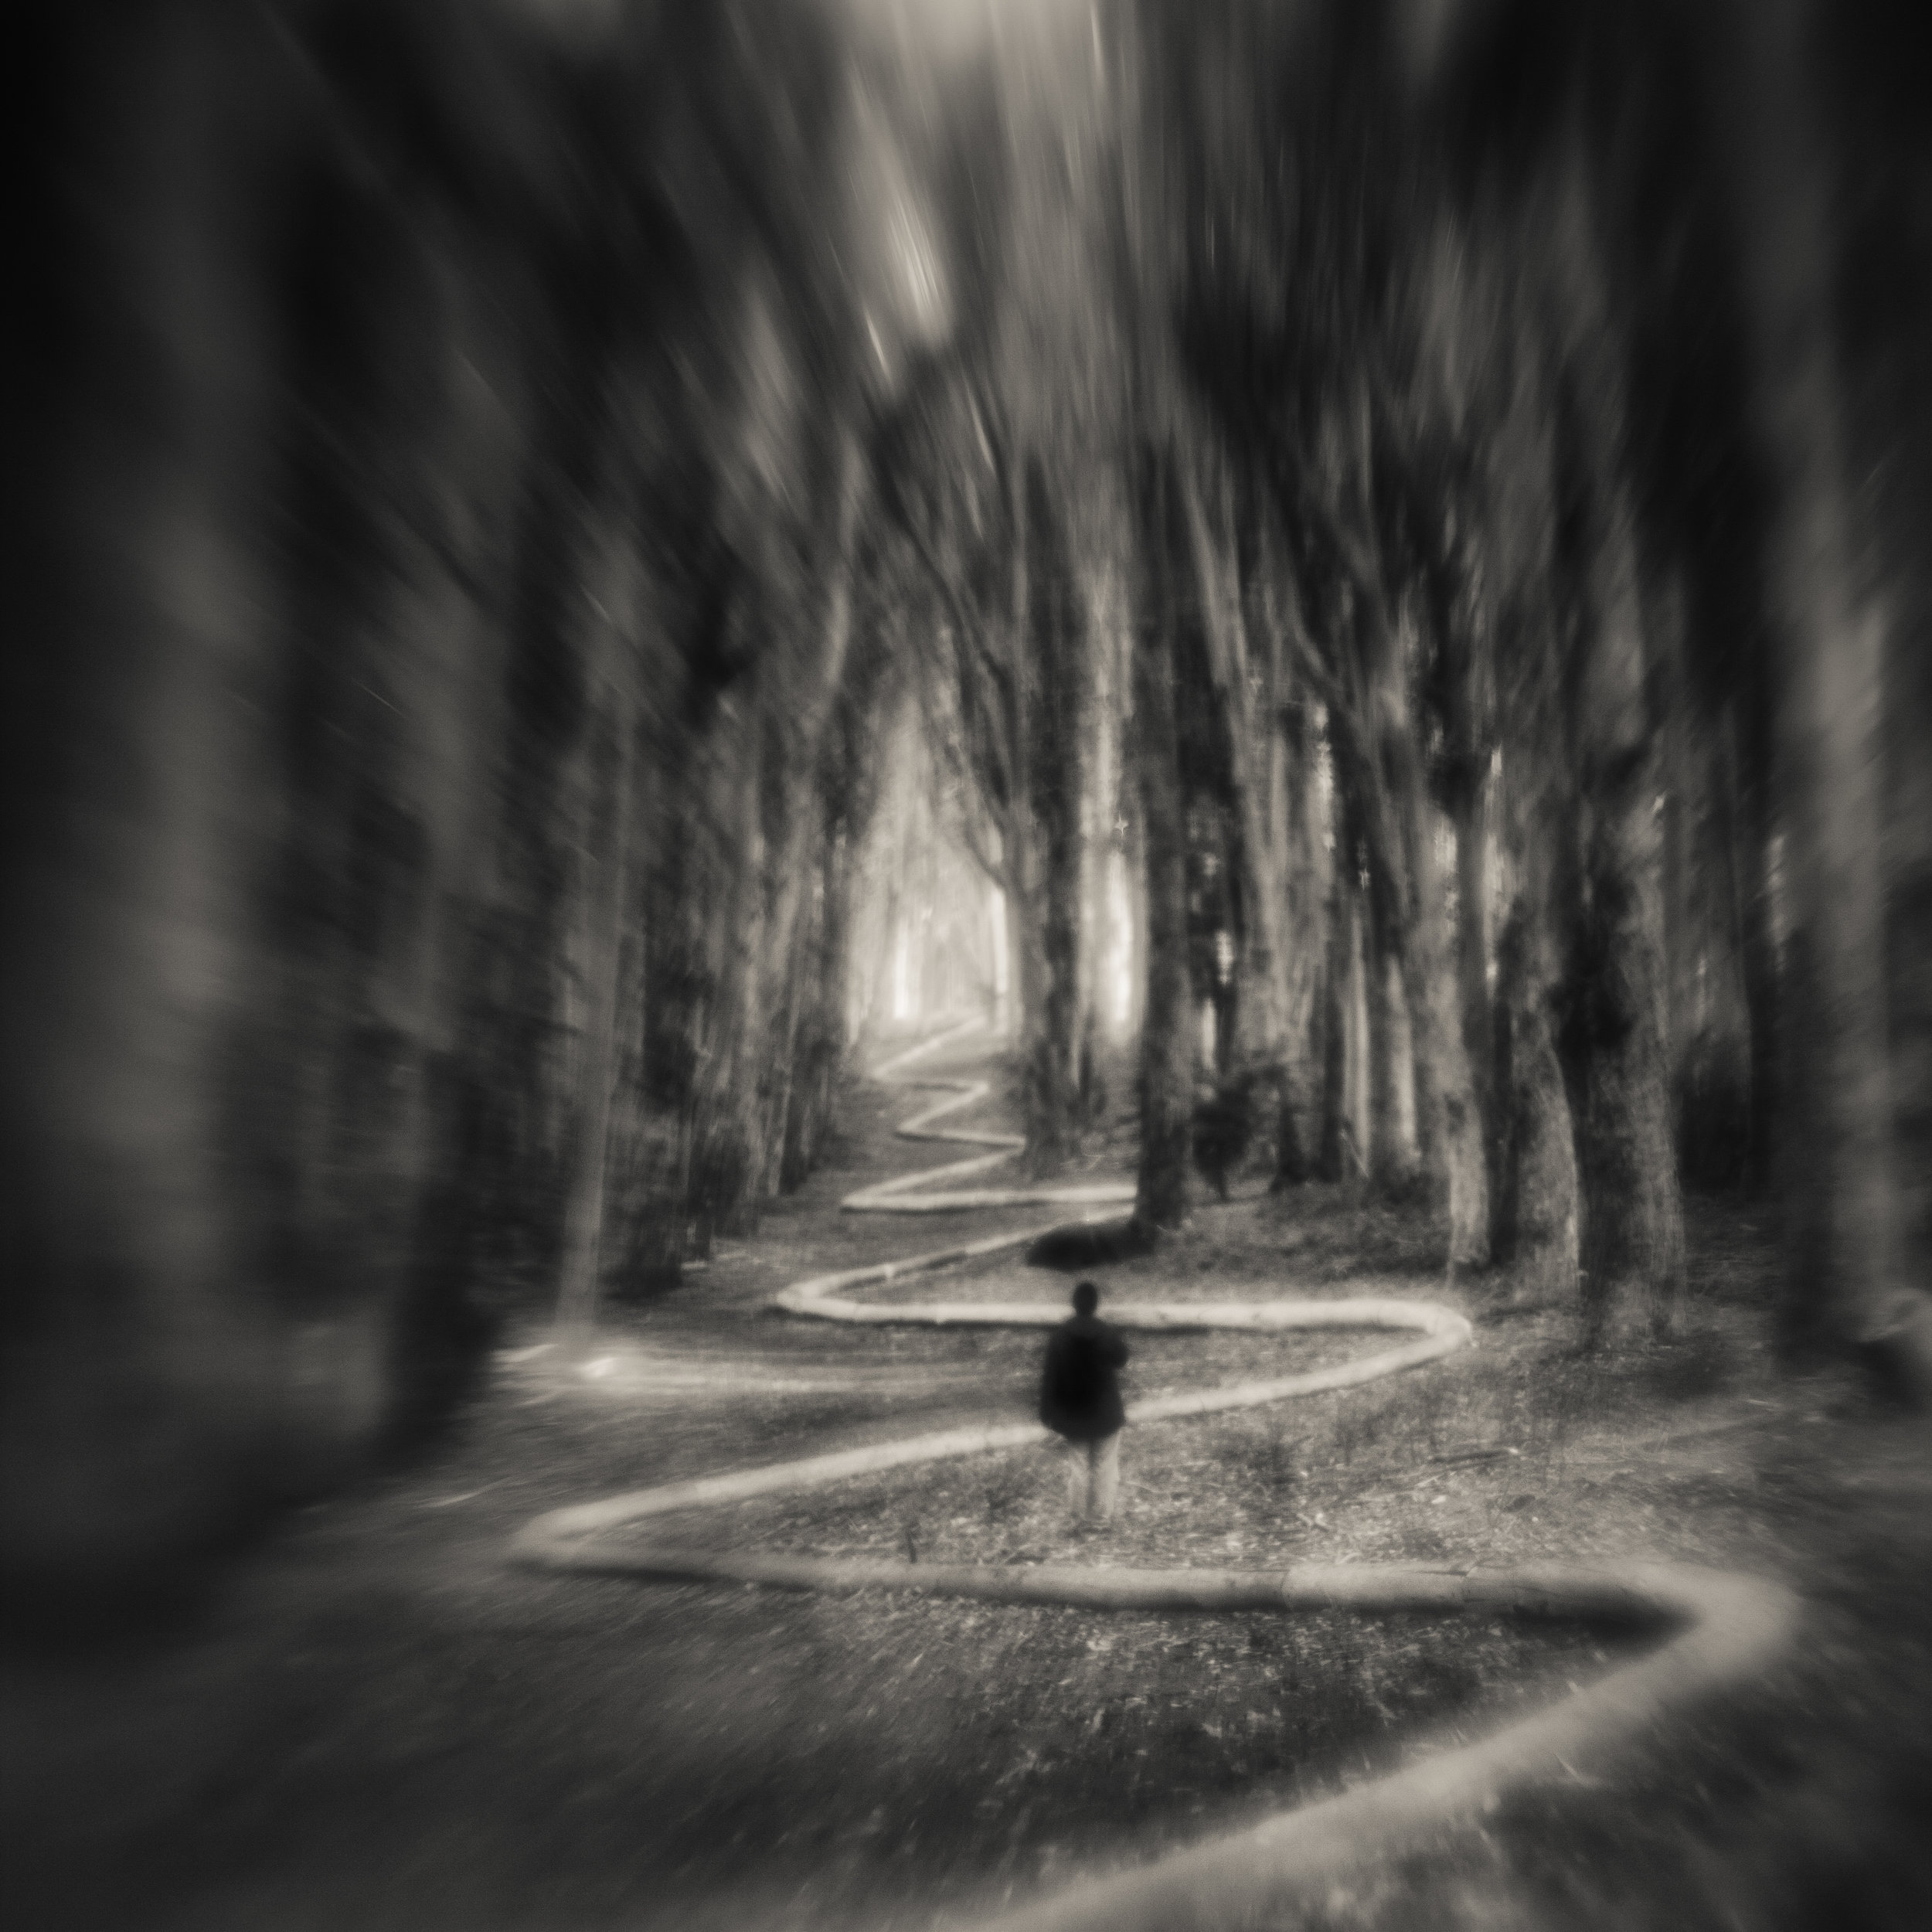 San Francisco presidio goldsworthy wavy line path forest blur figure